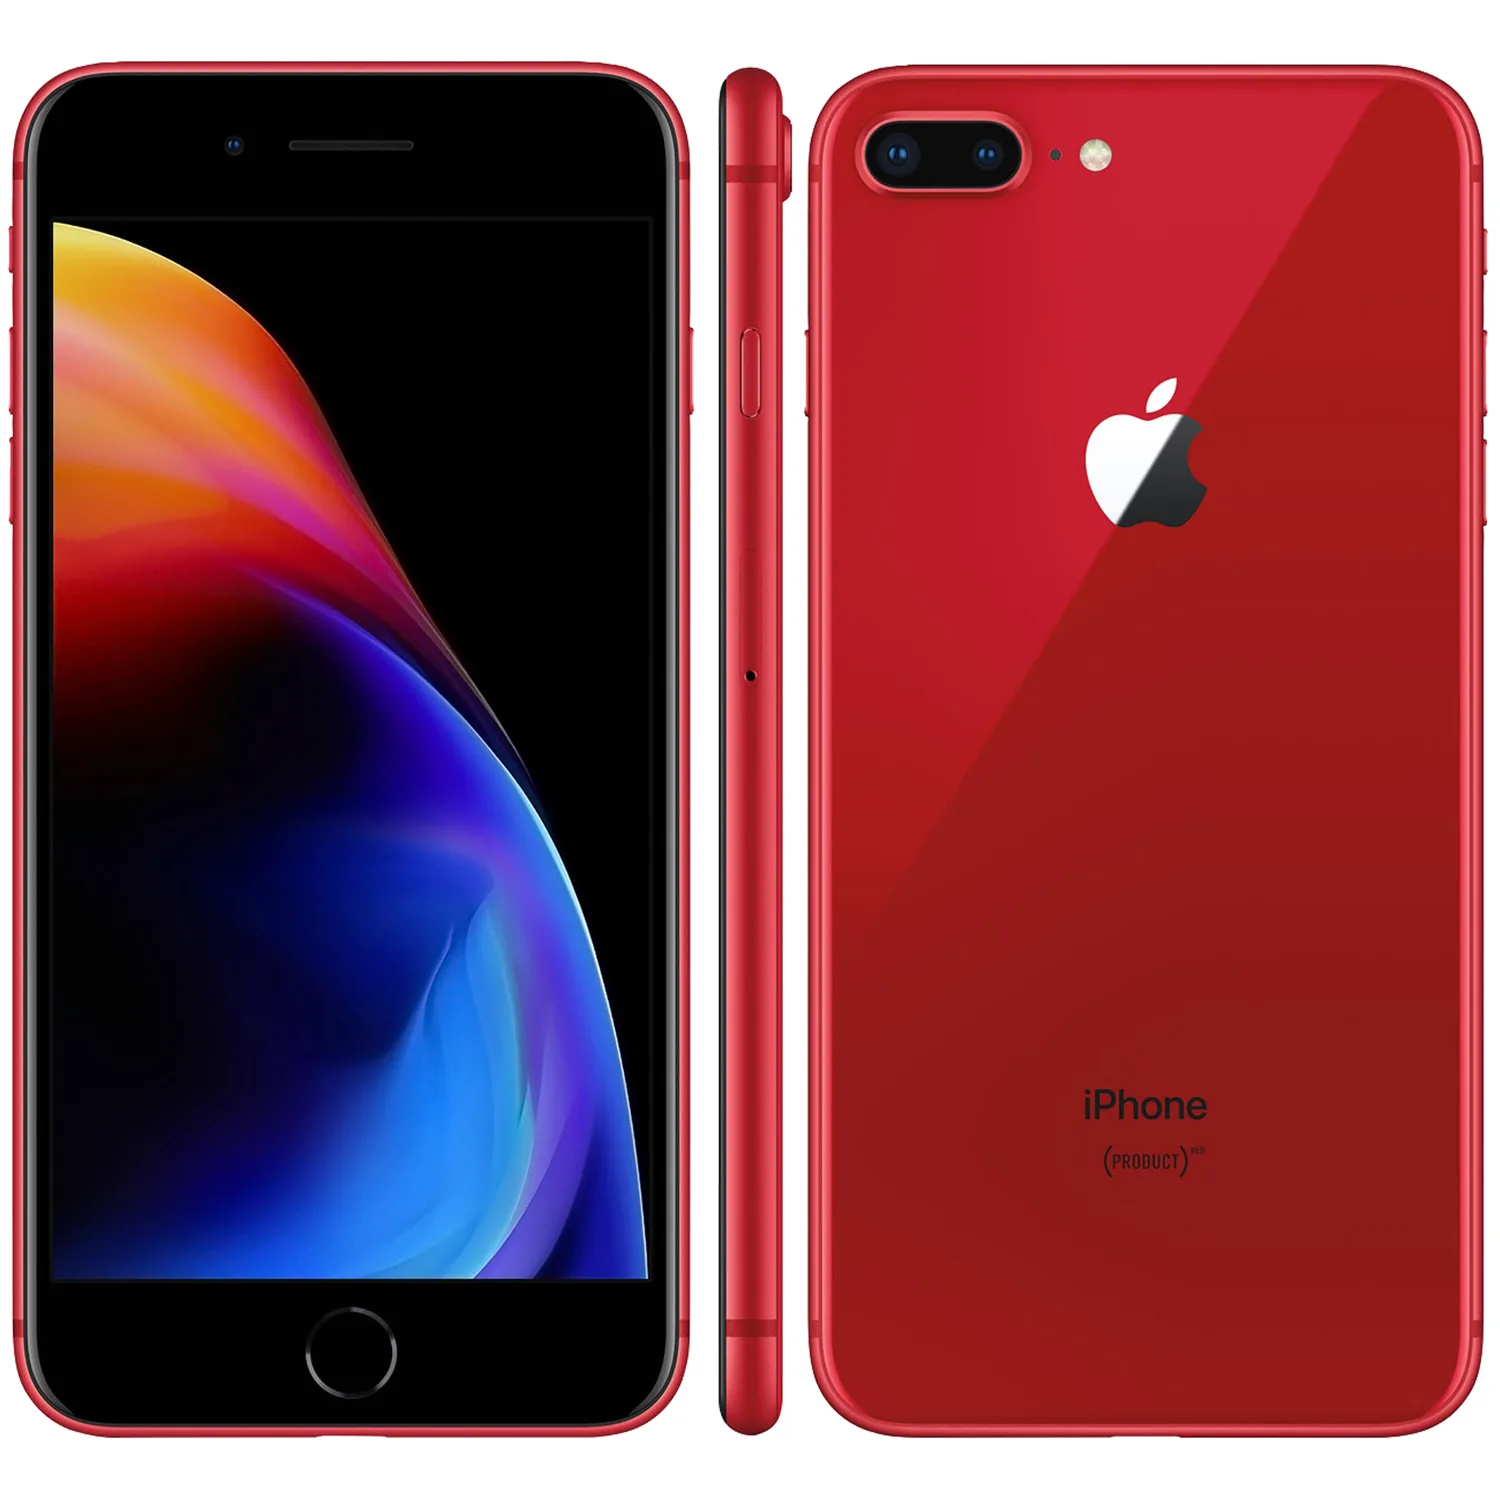 Refurbished iPhone 8 Plus 64GB rood kopen? - 2 jaar garantie! |  FixjeiPhone.nl